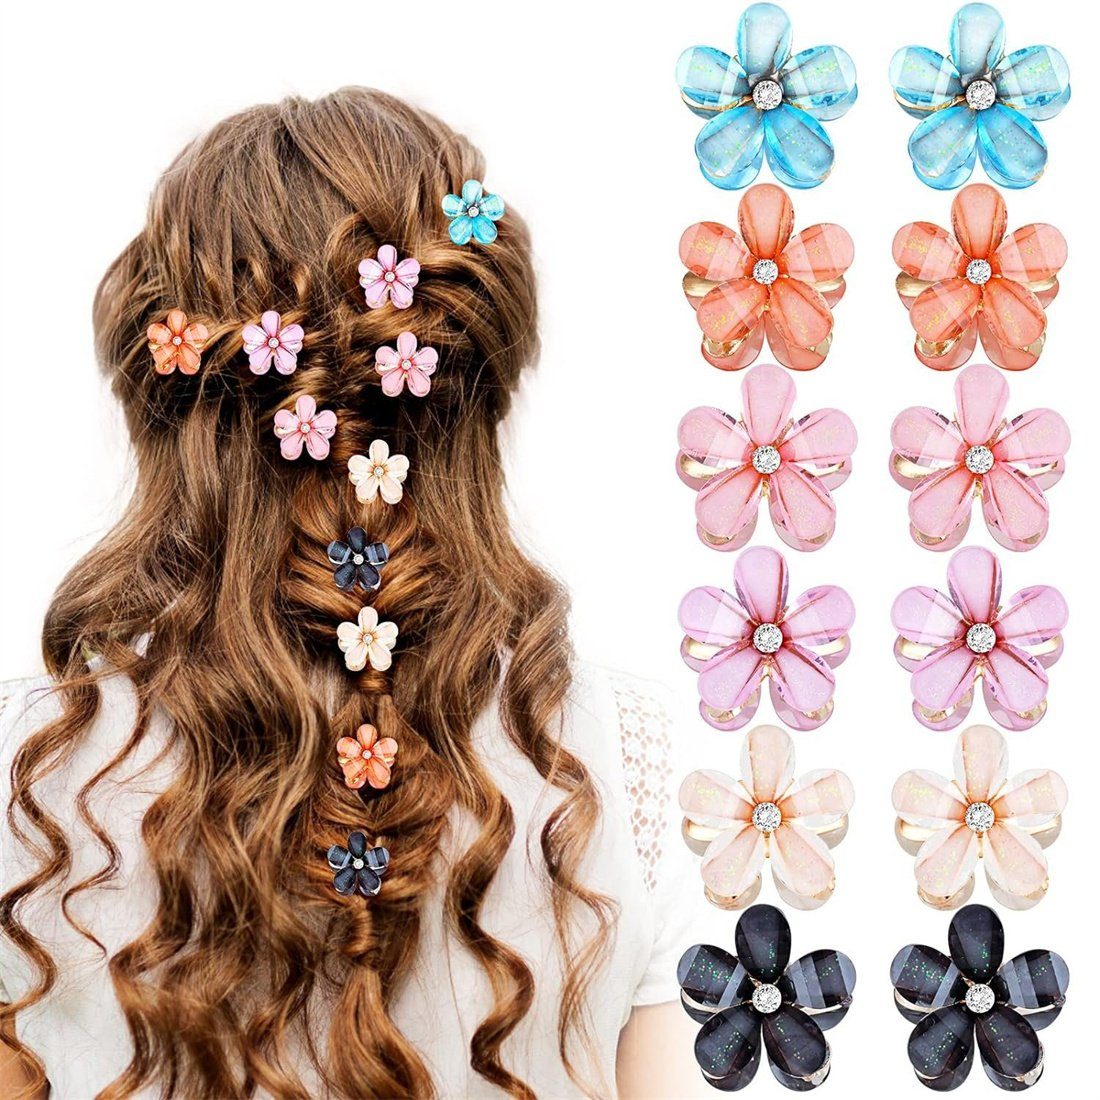 DAYUT Haarnadel Frauen Haarspangen, 12 Stück Blume Haarspangen Mini Haarspangen